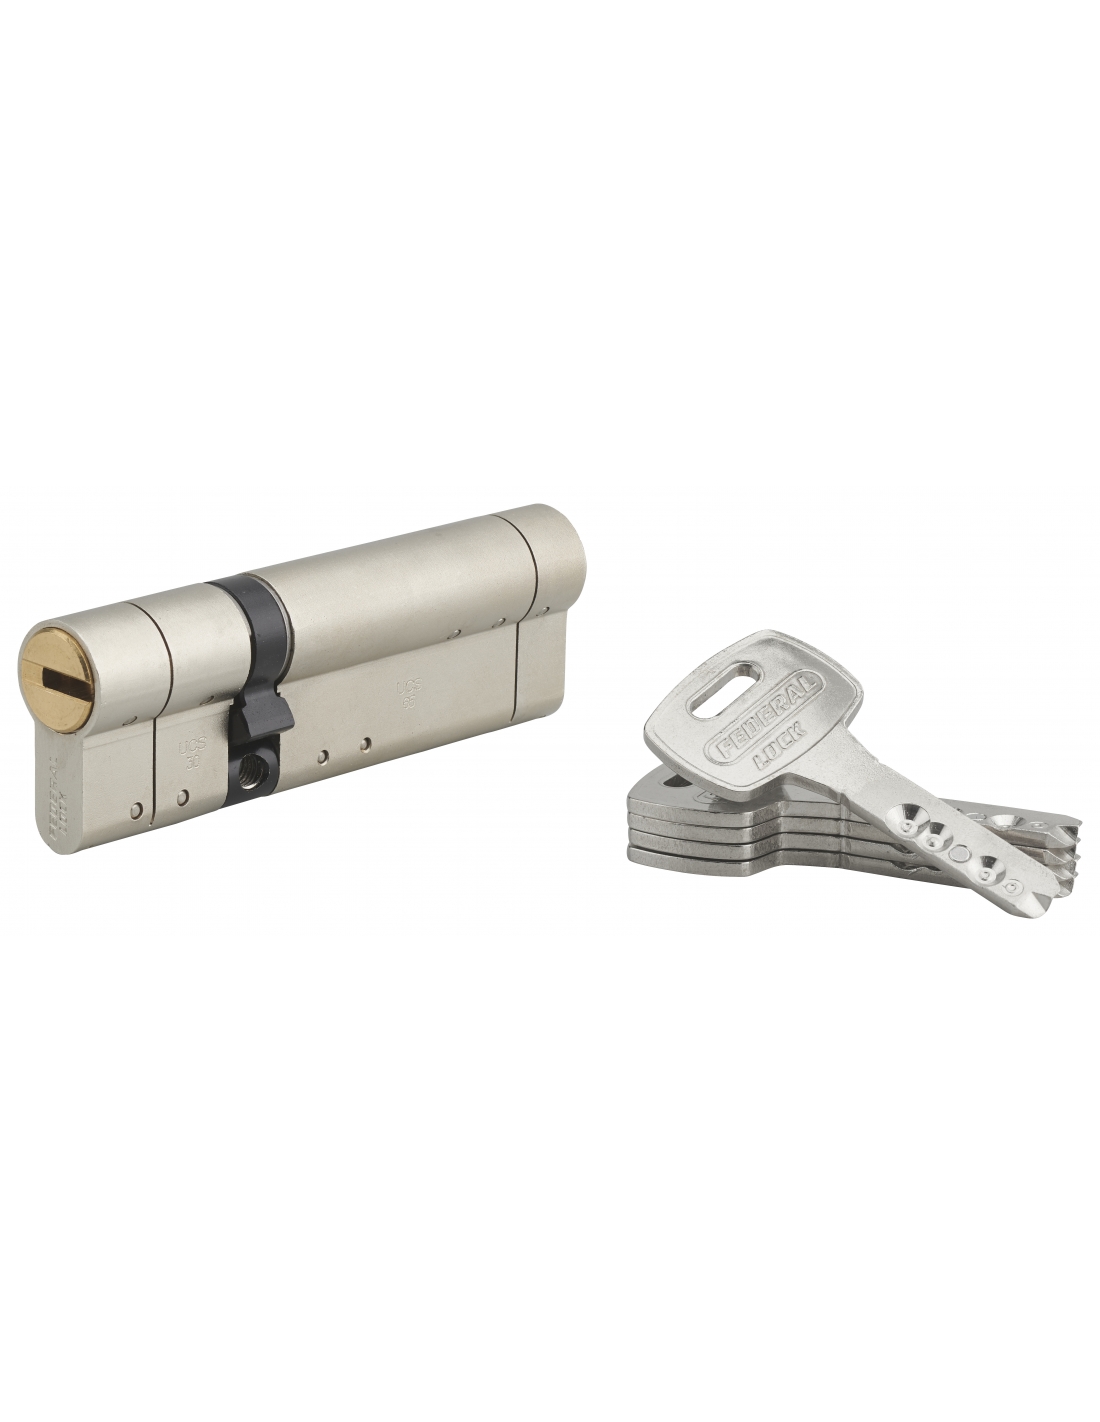 Cylindre 2 entrées 5G - Exem - Laiton nickelé - S'entrouvrant avec clé  N°KCB006516 - 30 x 40 mm